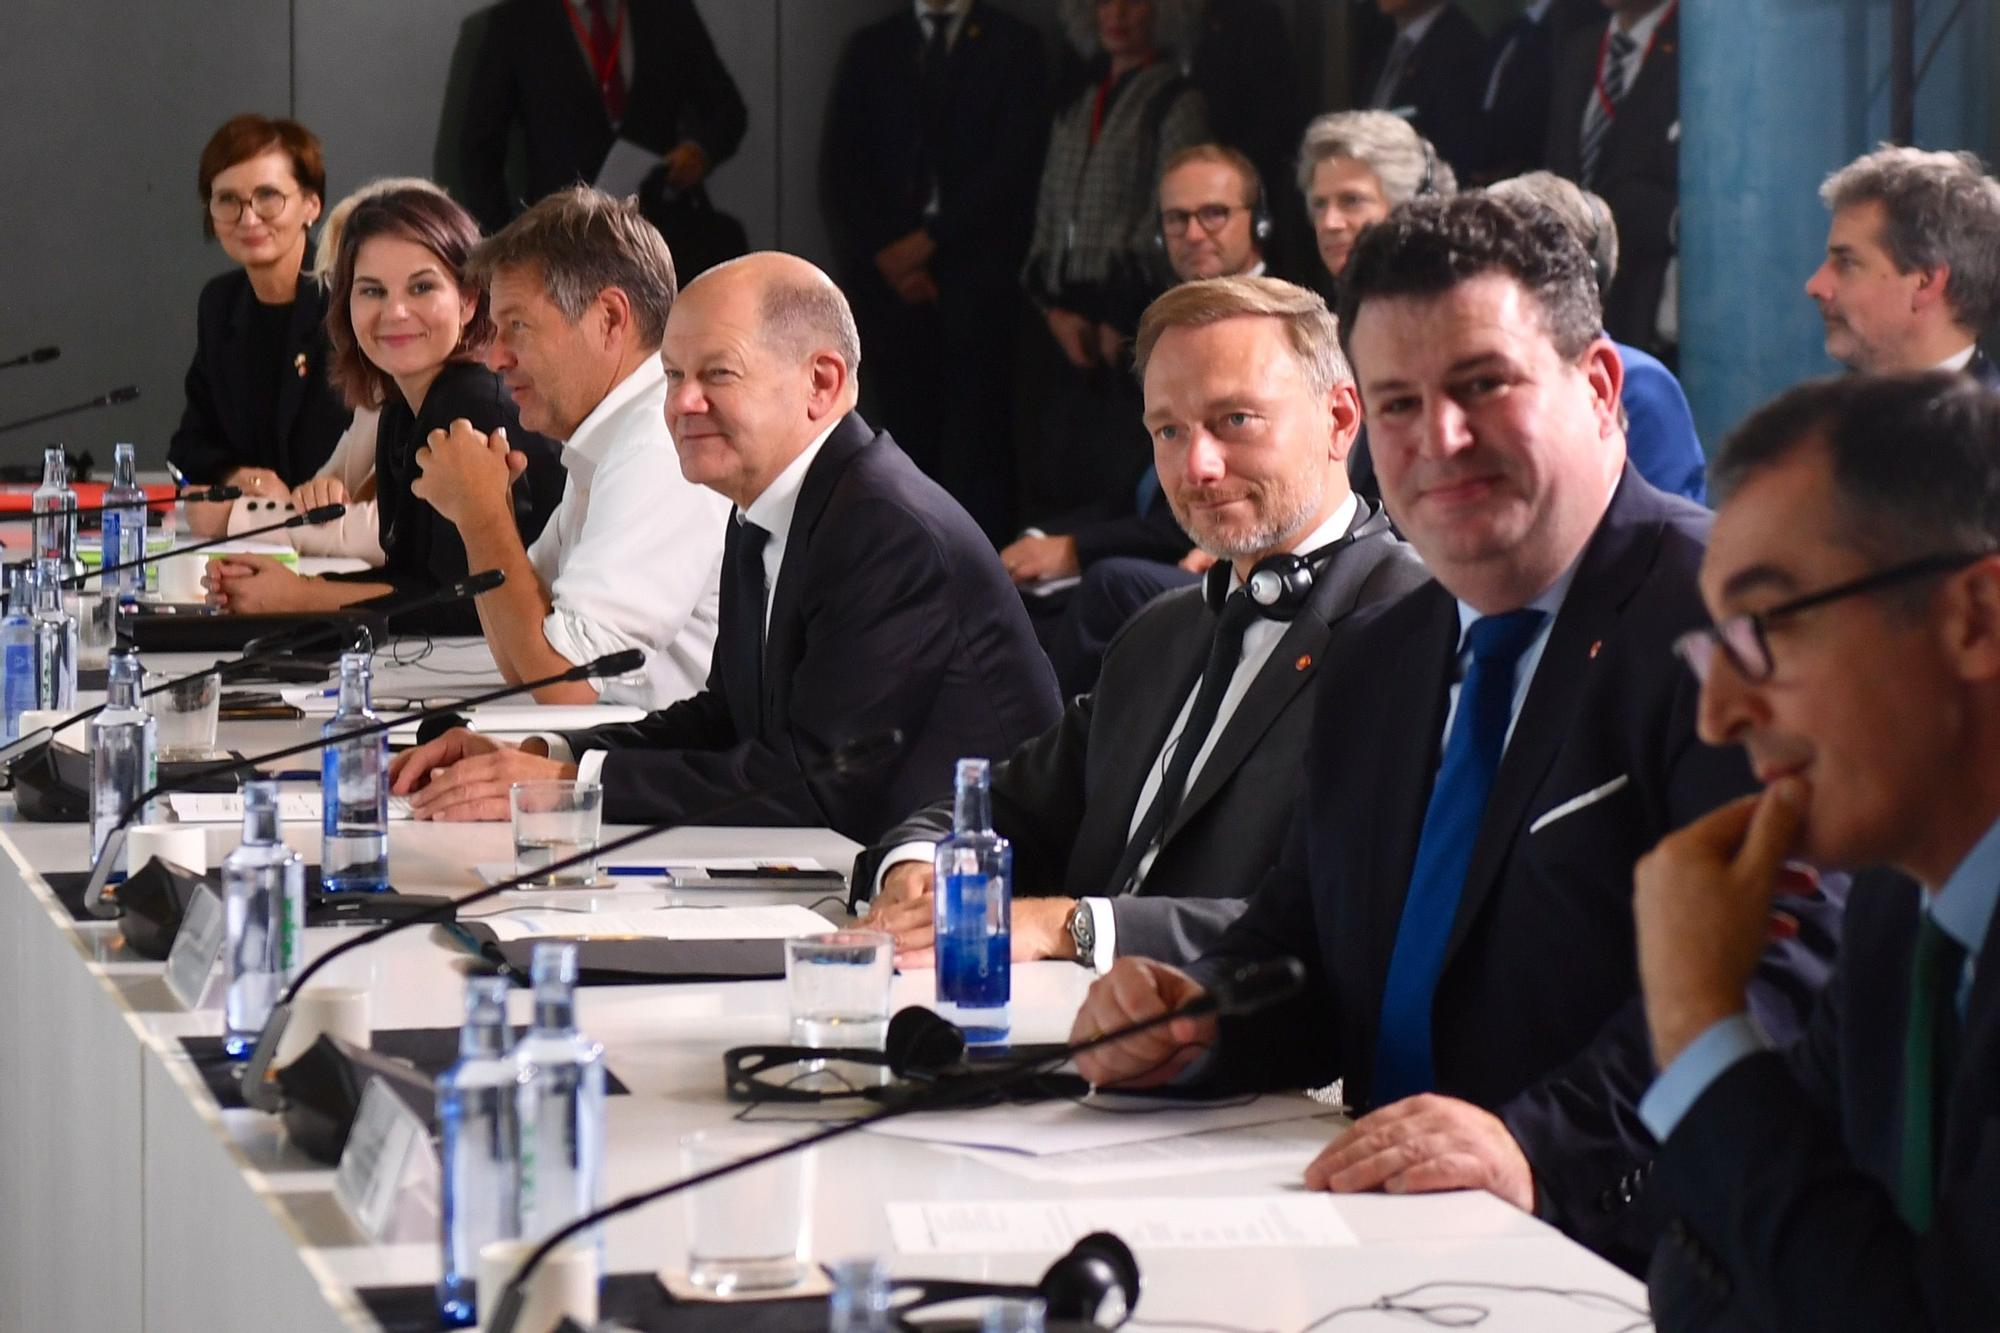 Arrancan las reuniones de la cumbre hispanoalemana de A Coruña con Sánchez, Scholtz y los ministros de ambos países